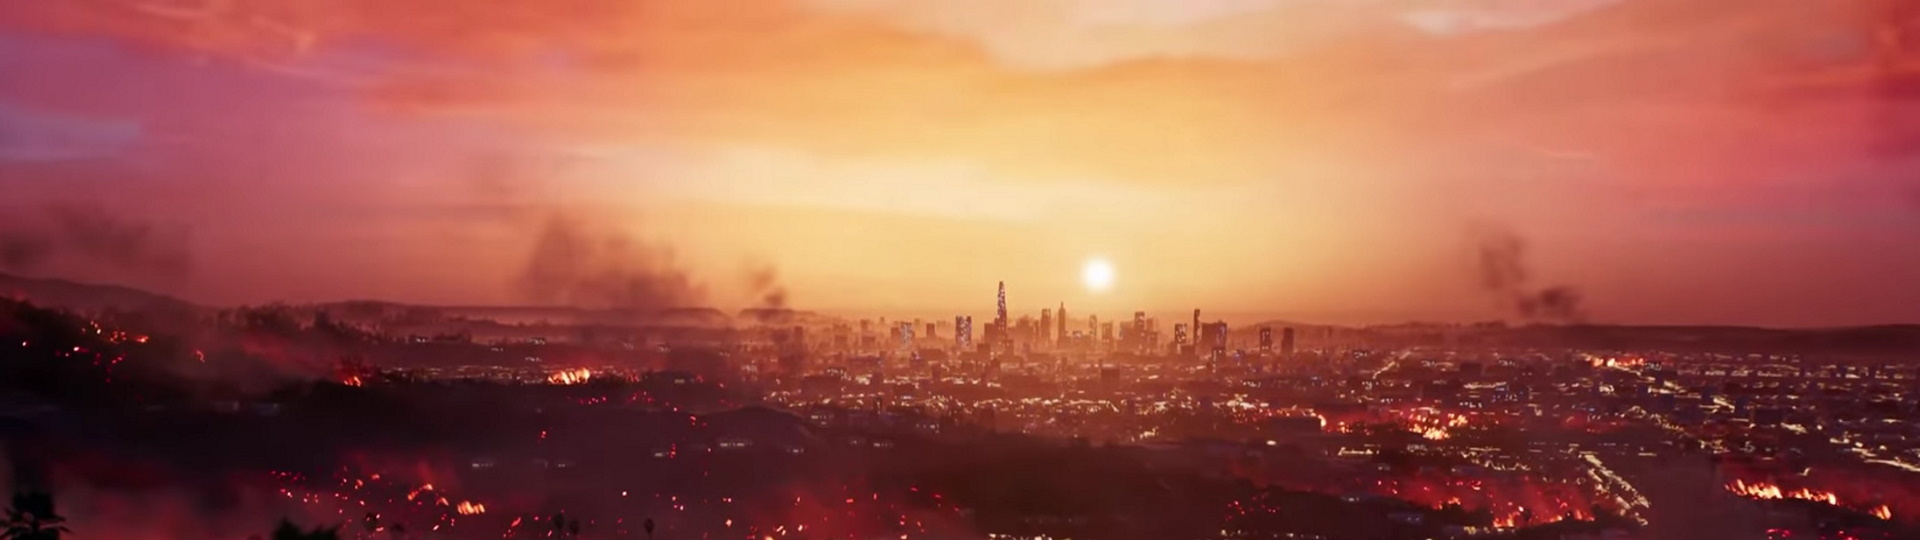 Úvodní desetiminutovka z Dead Island 2 připomíná brzké vydání | Videa